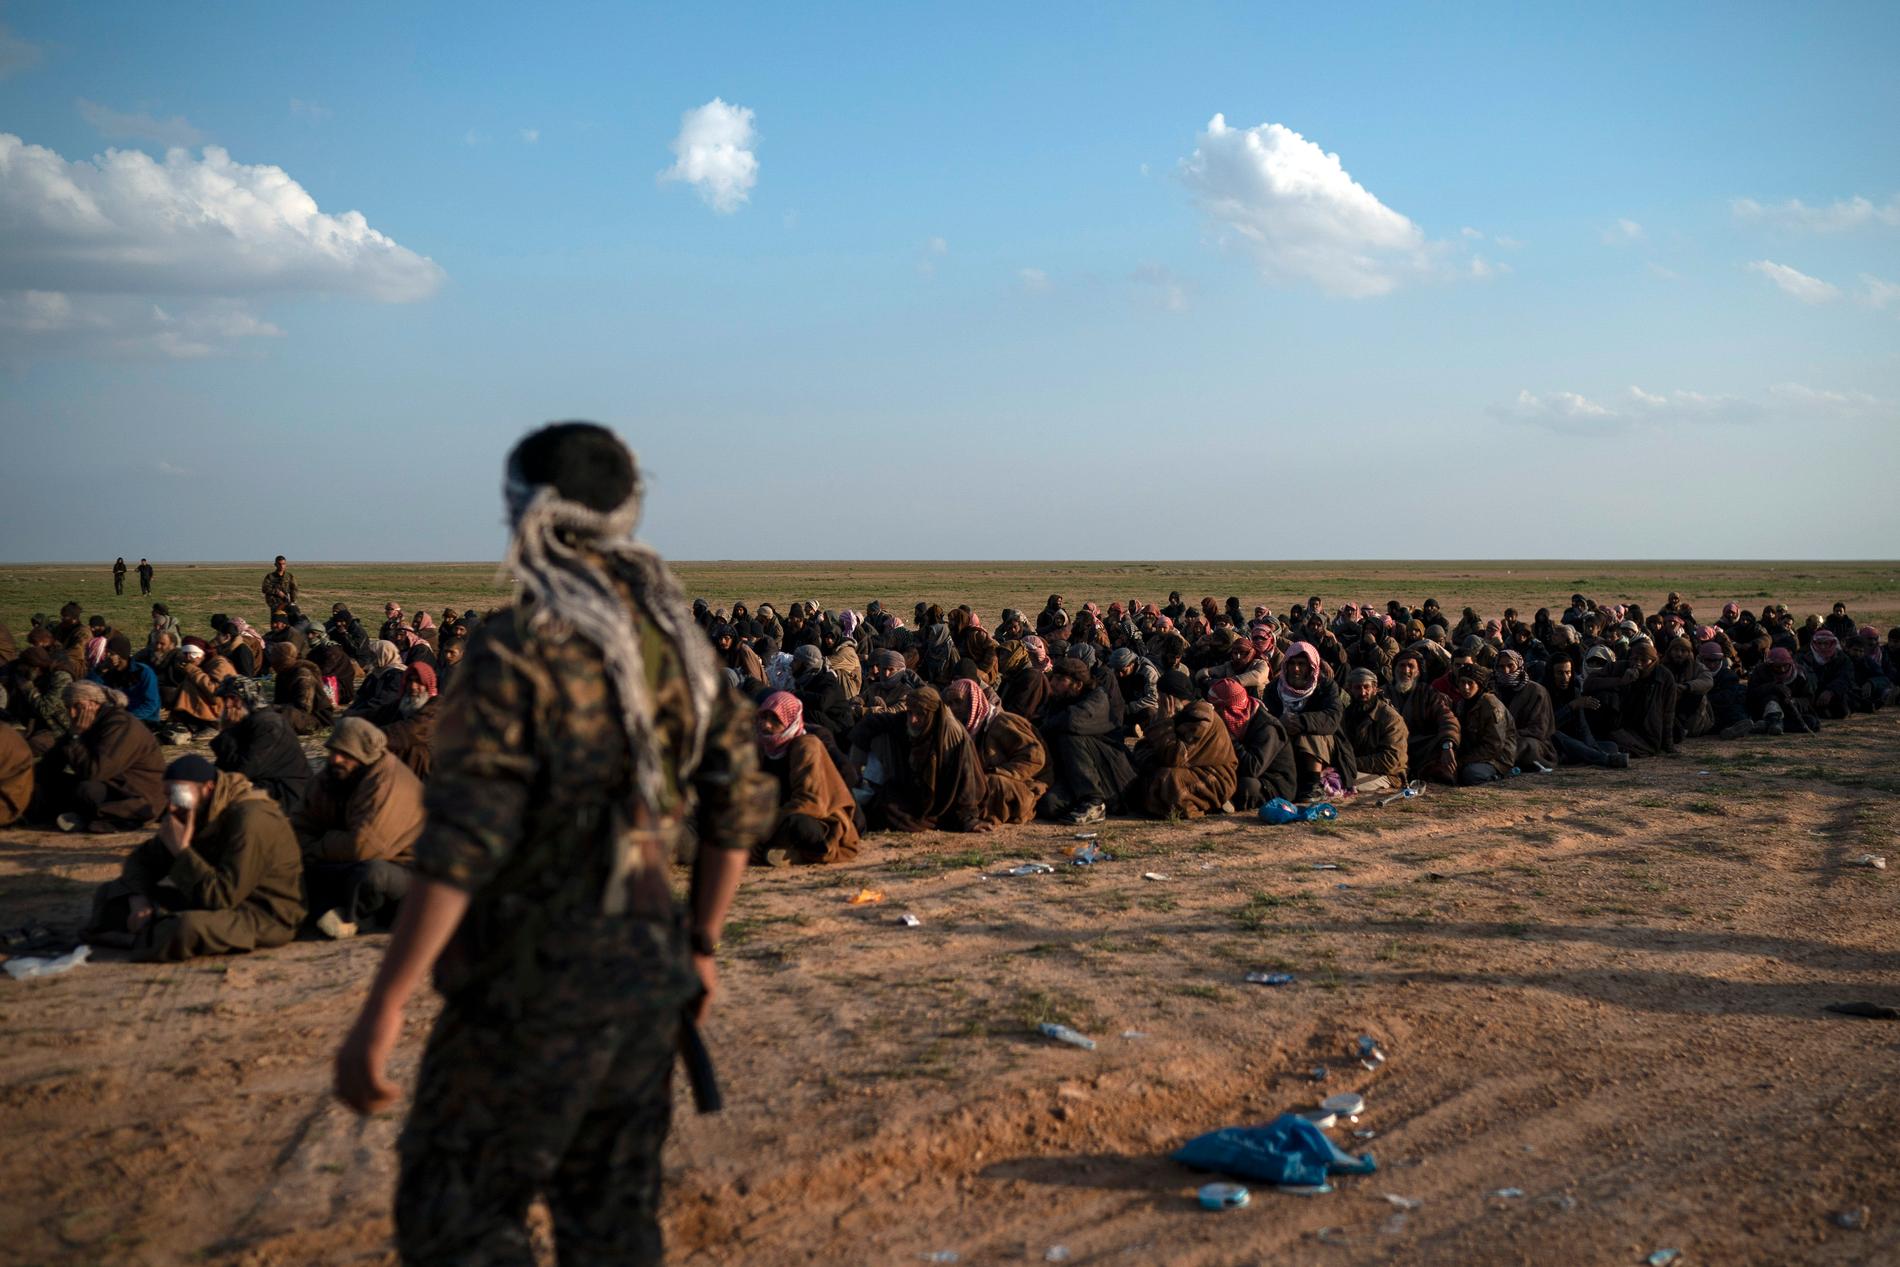 Milismän från SDF vaktar män som har evakuerats nära orten Baghouz i östra Syrien.